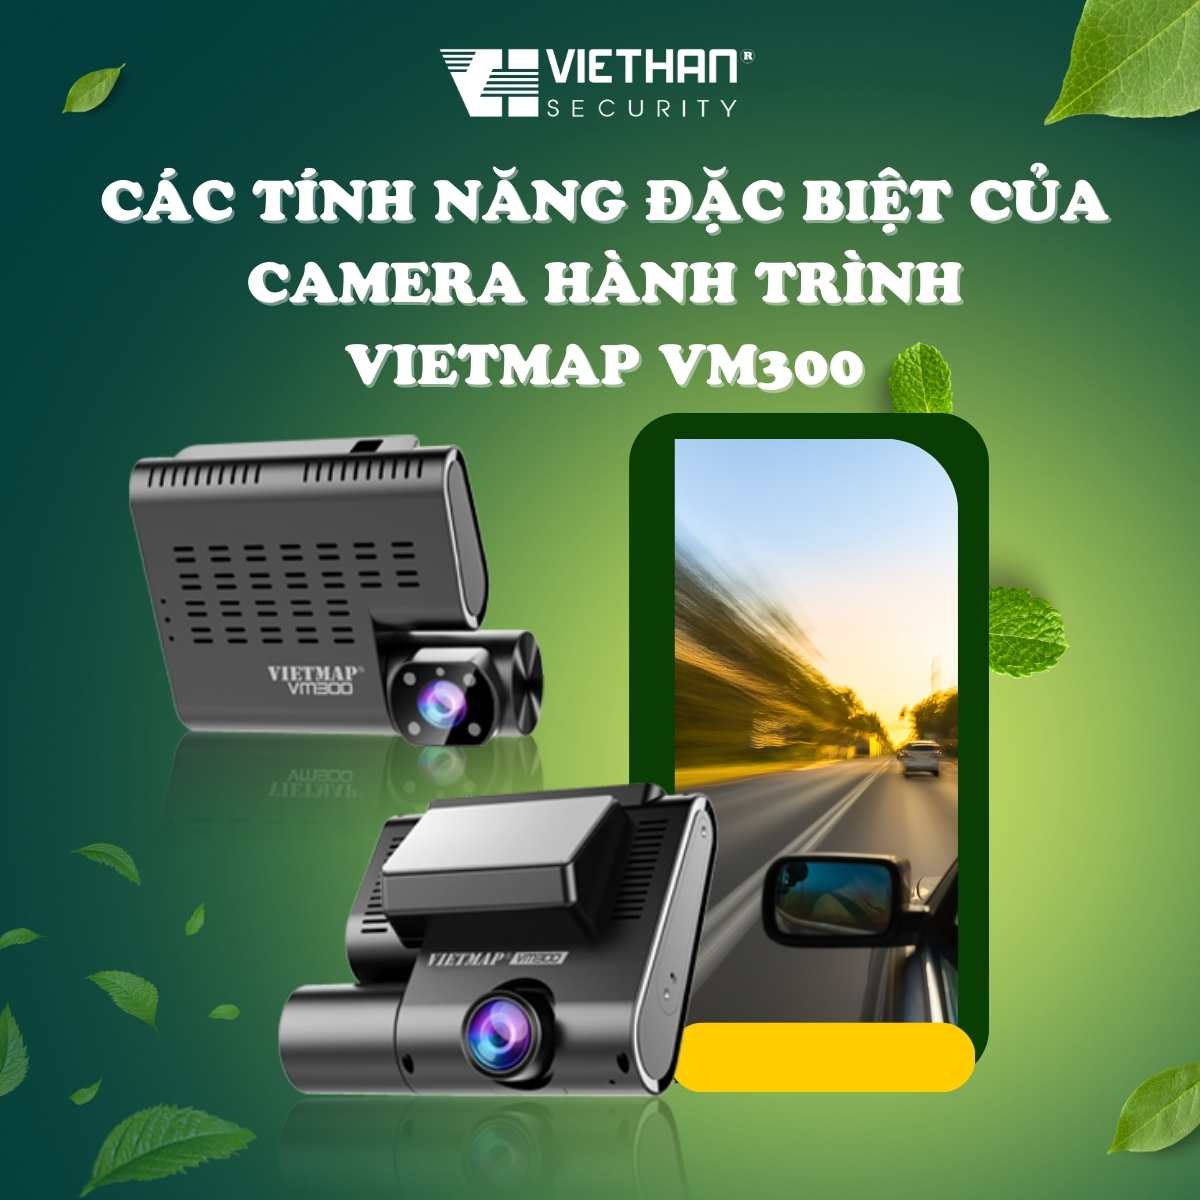  Các tính năng đặc biệt của camera hành trình Vietmap VM300 an toàn khi lái xe